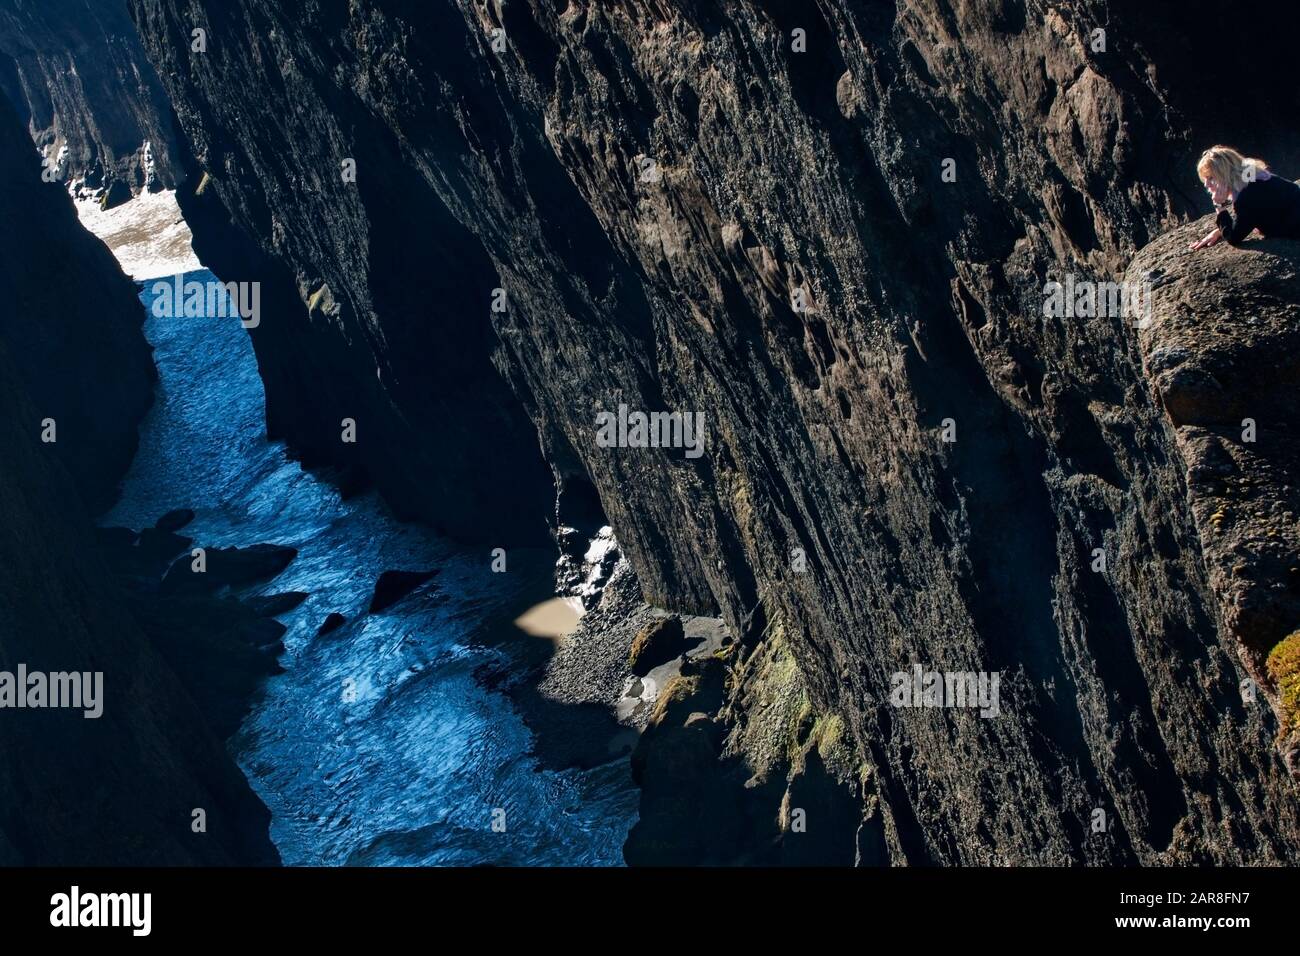 Die Touristin lehnt sich an einen Felsen mit Blick auf einen Fluss, der durch einen schmalen Canyon in Nordisland führt, den Hafrahvammaglijufrum Staudamm, Island, Europa Stockfoto